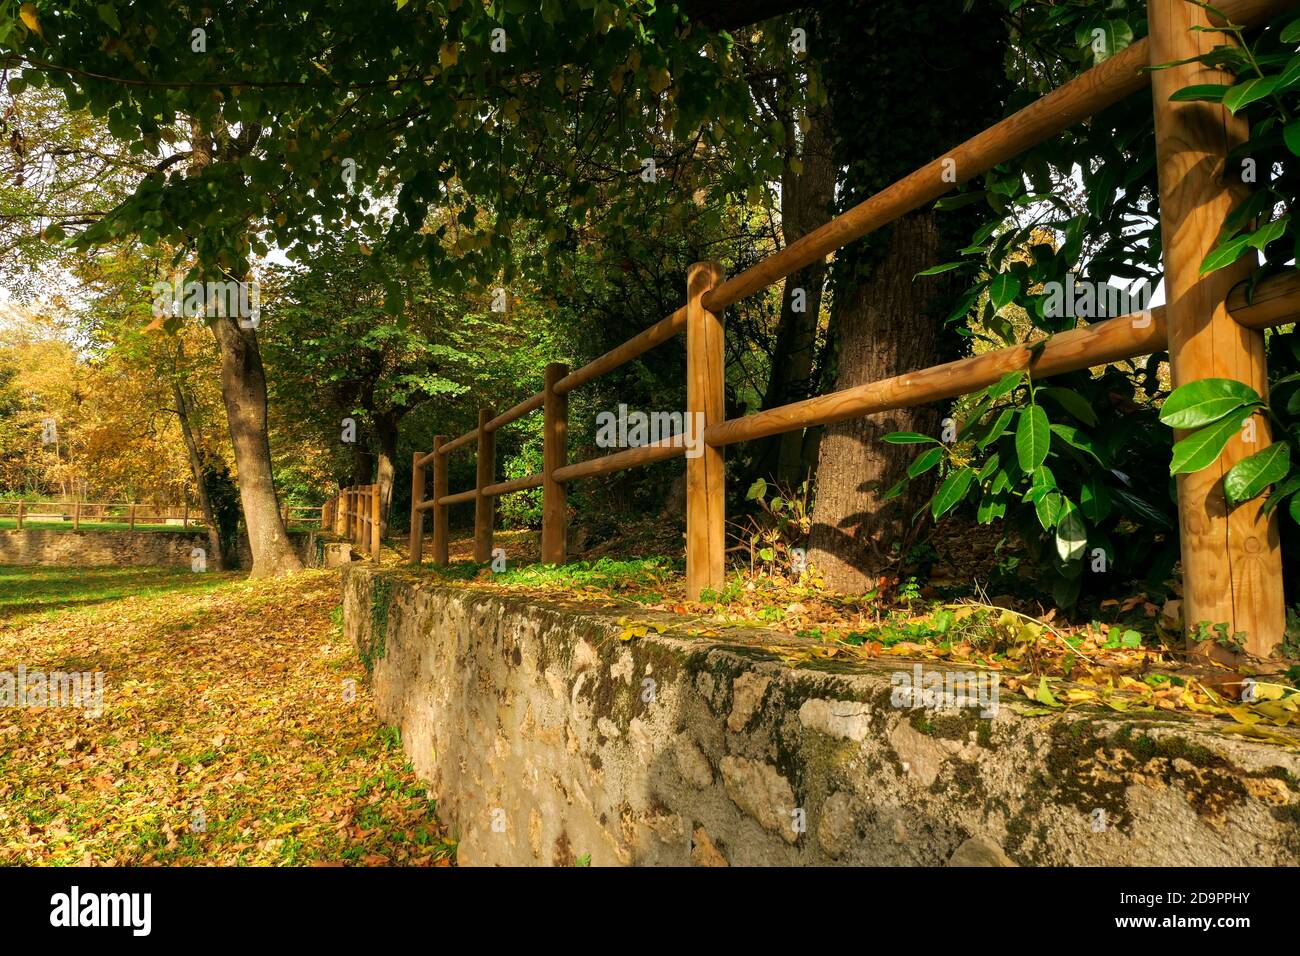 Mur de pierre en perspective dans un parc avec des clôtures en bois au sommet. Végétation et arbres en arrière-plan. Banque D'Images